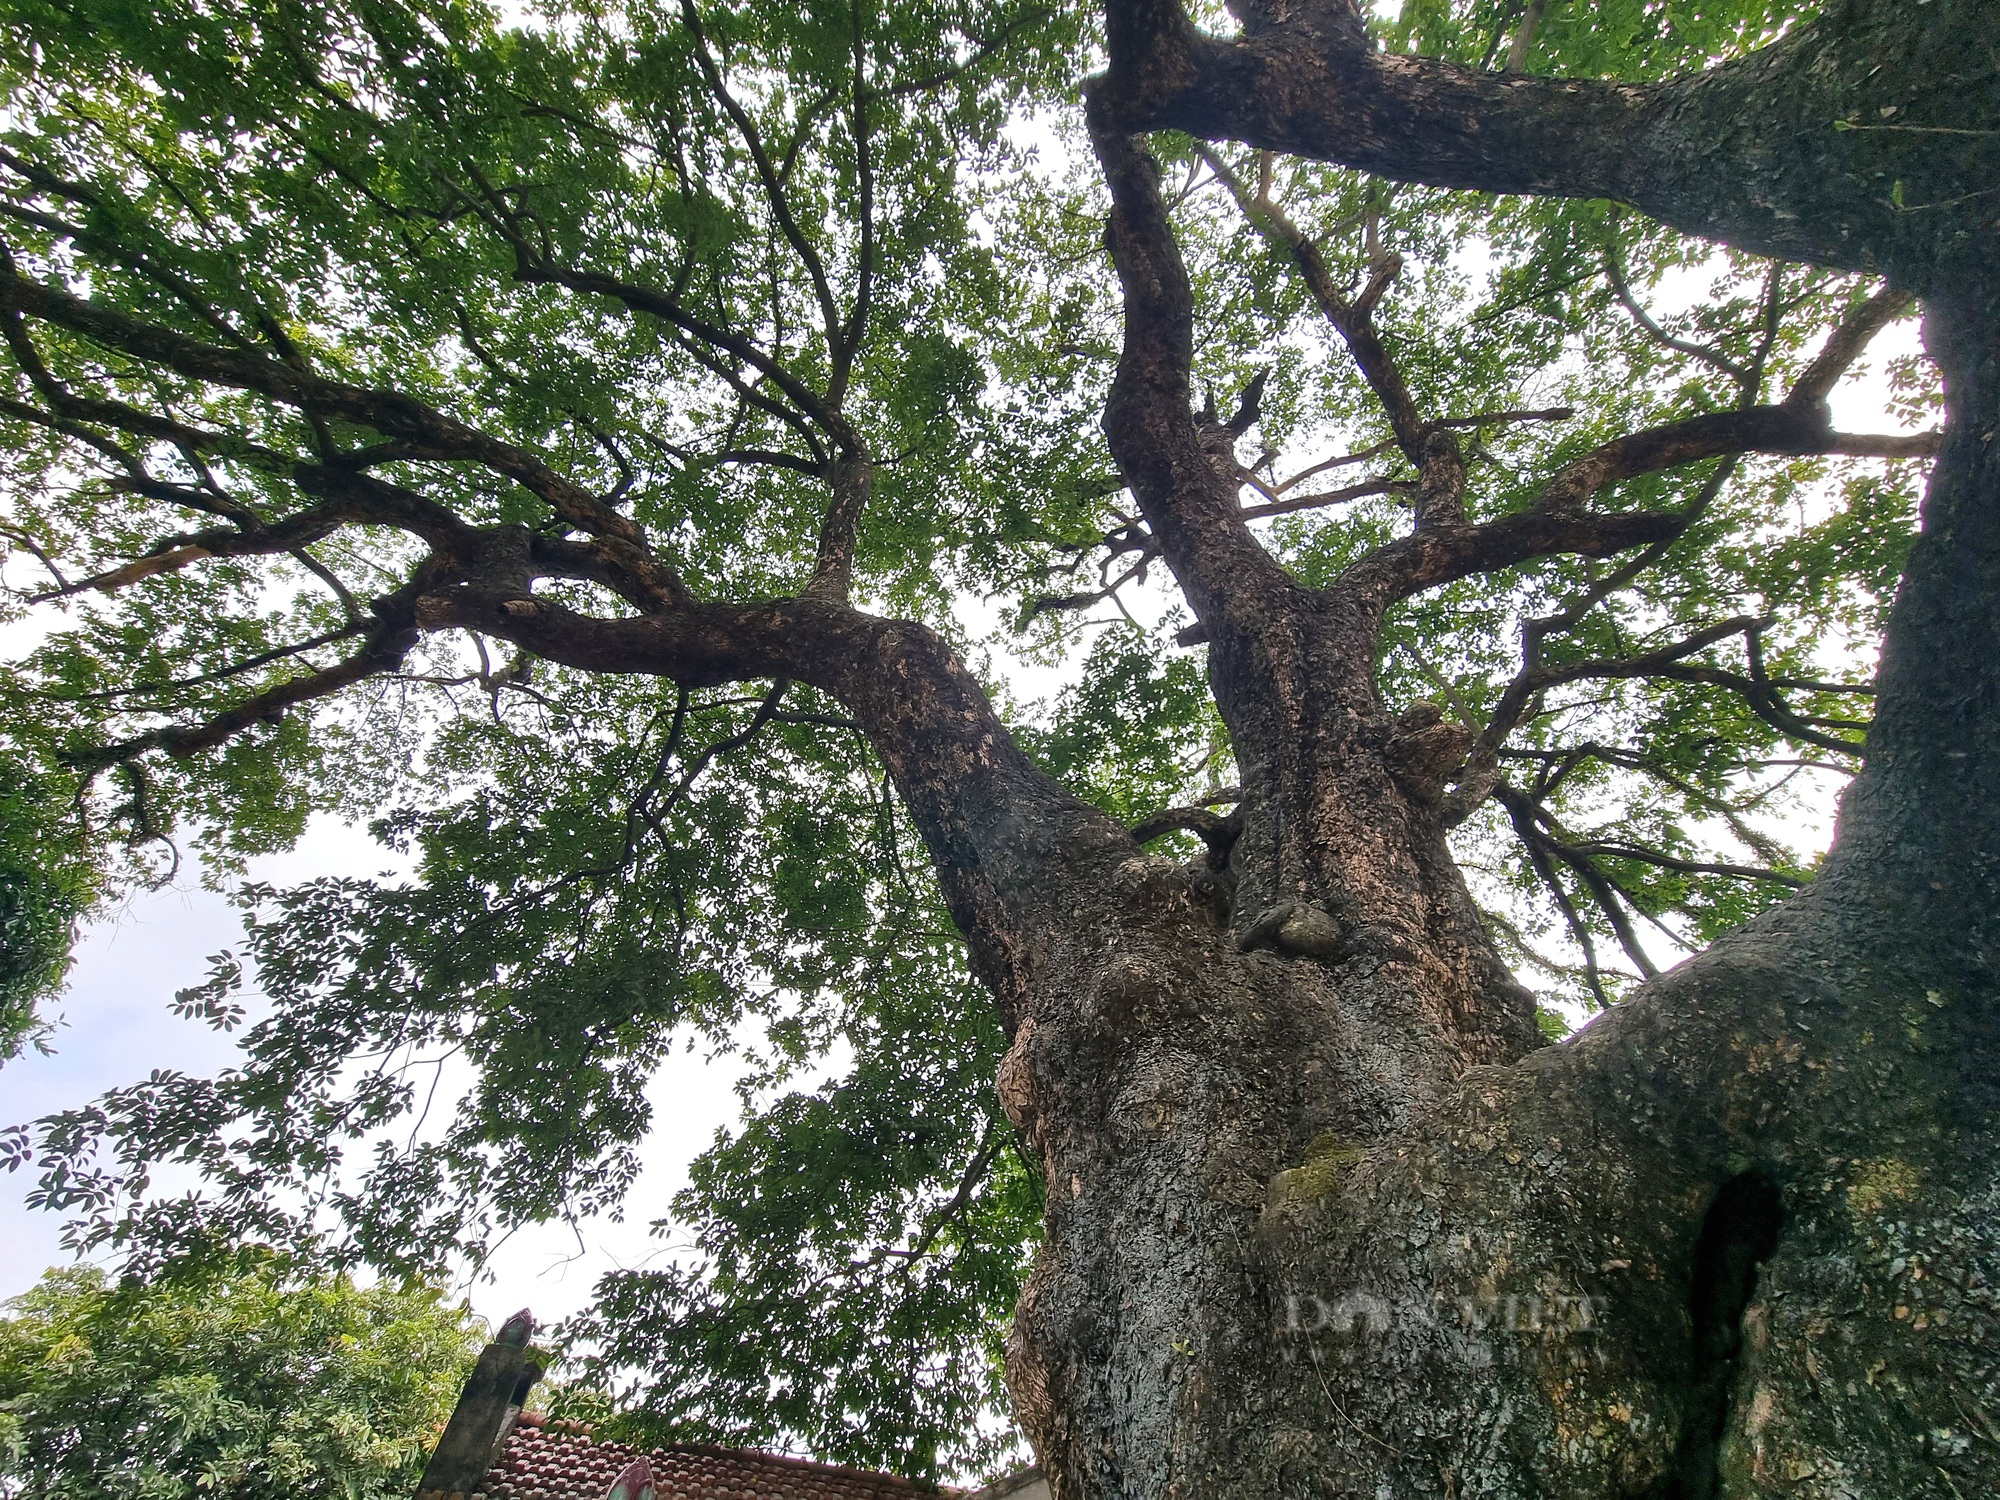 Cận cảnh cây thị cổ hơn 700 năm với thân xù xì, cành lá xanh tốt ở Ninh Bình - Ảnh 6.